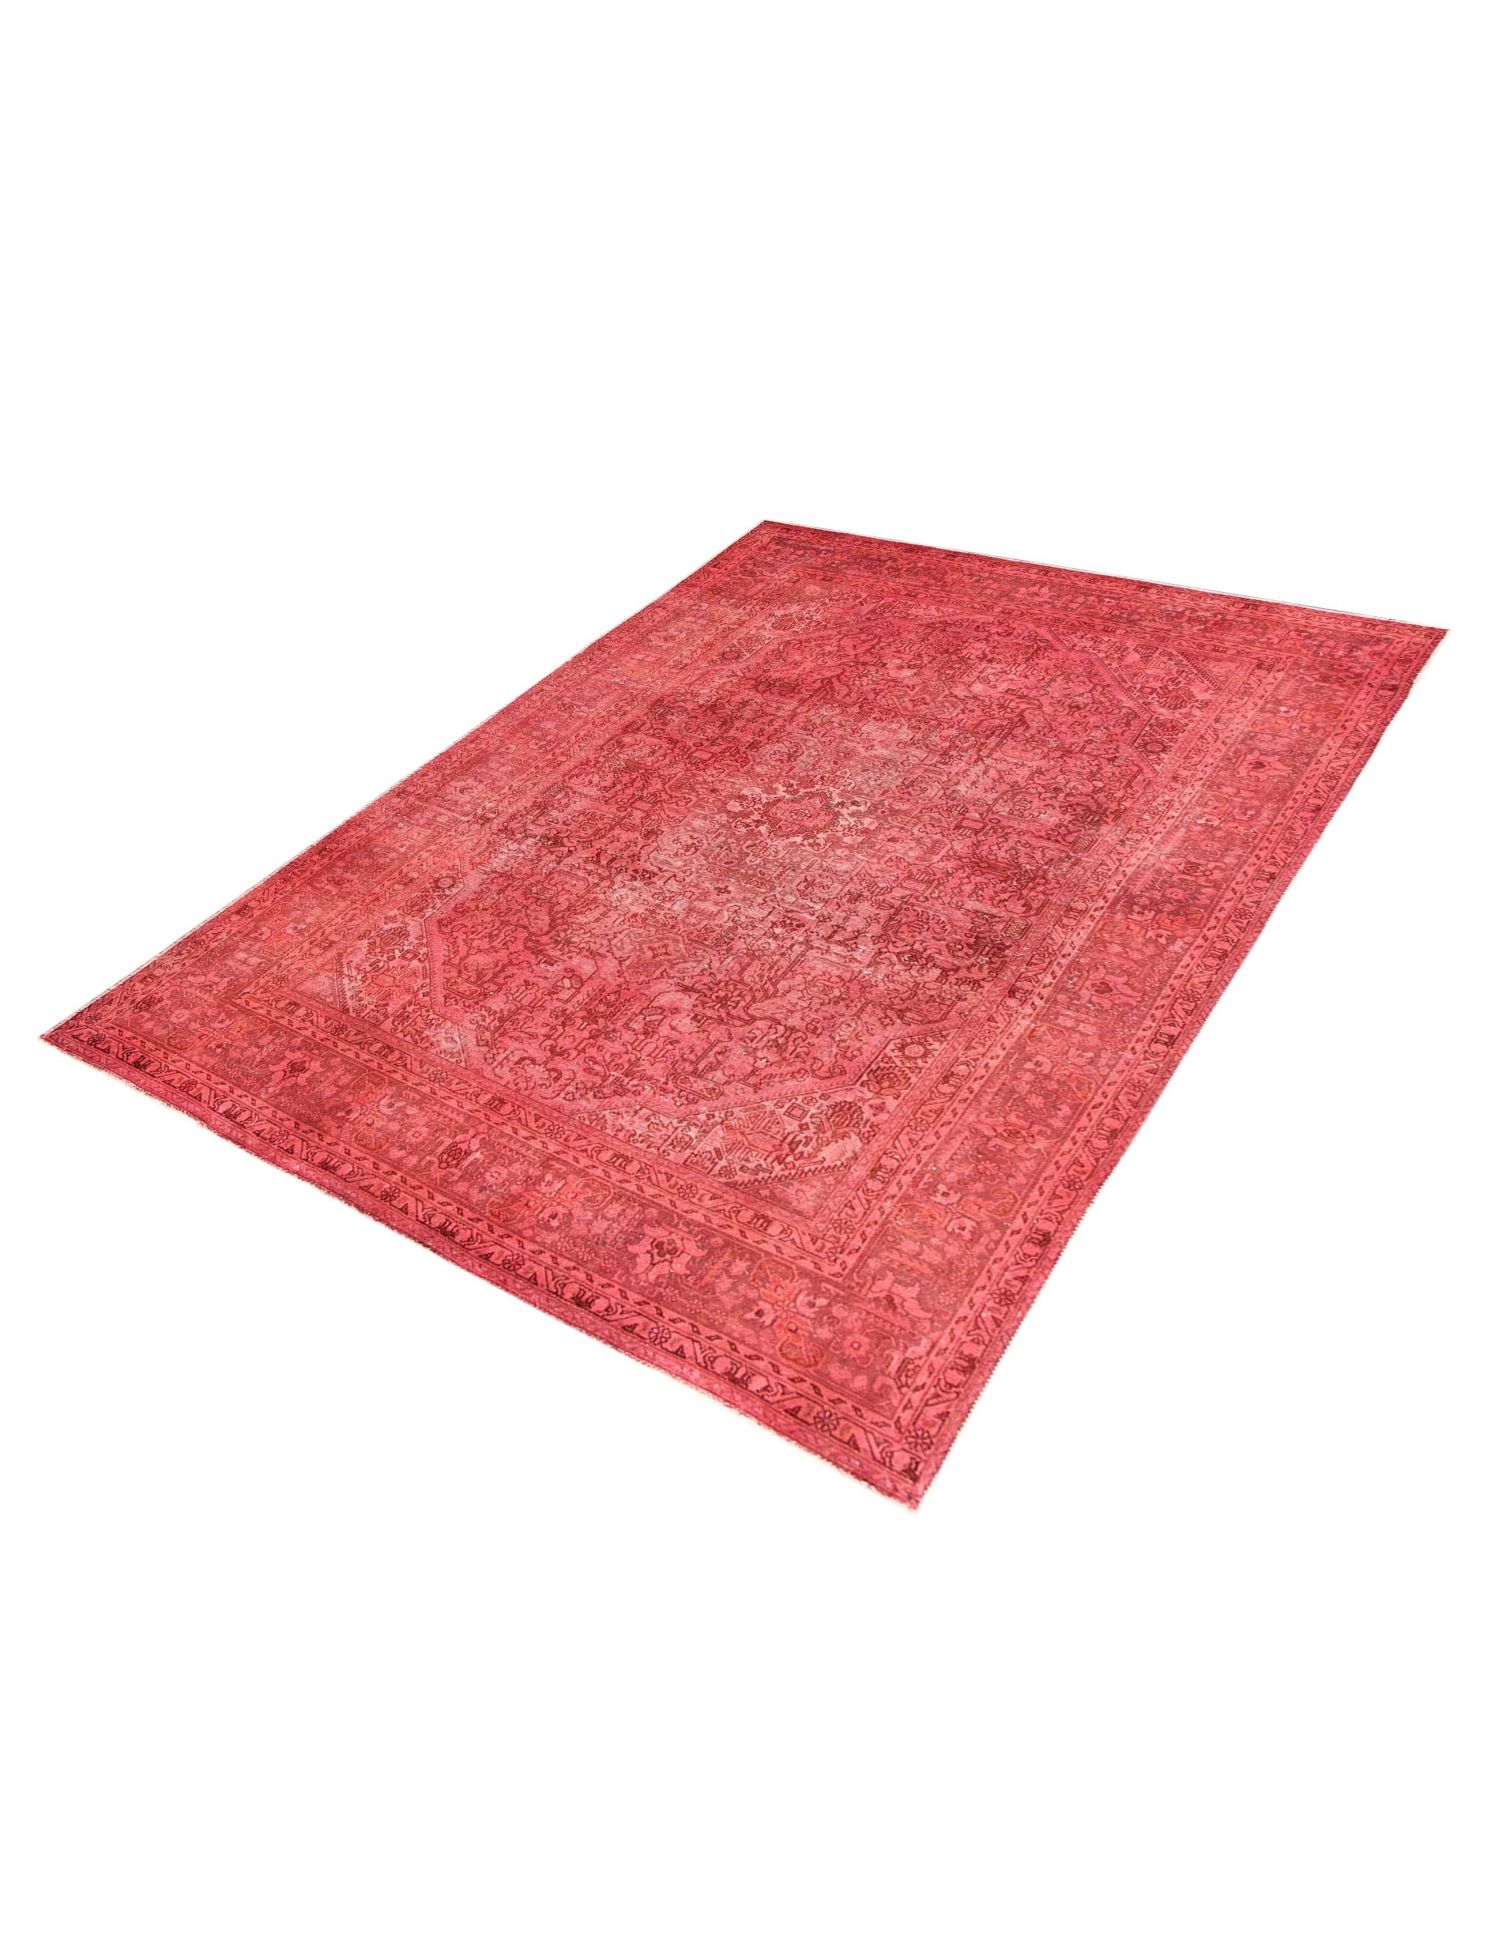 Persischer Vintage Teppich  rot <br/>300 x 200 cm